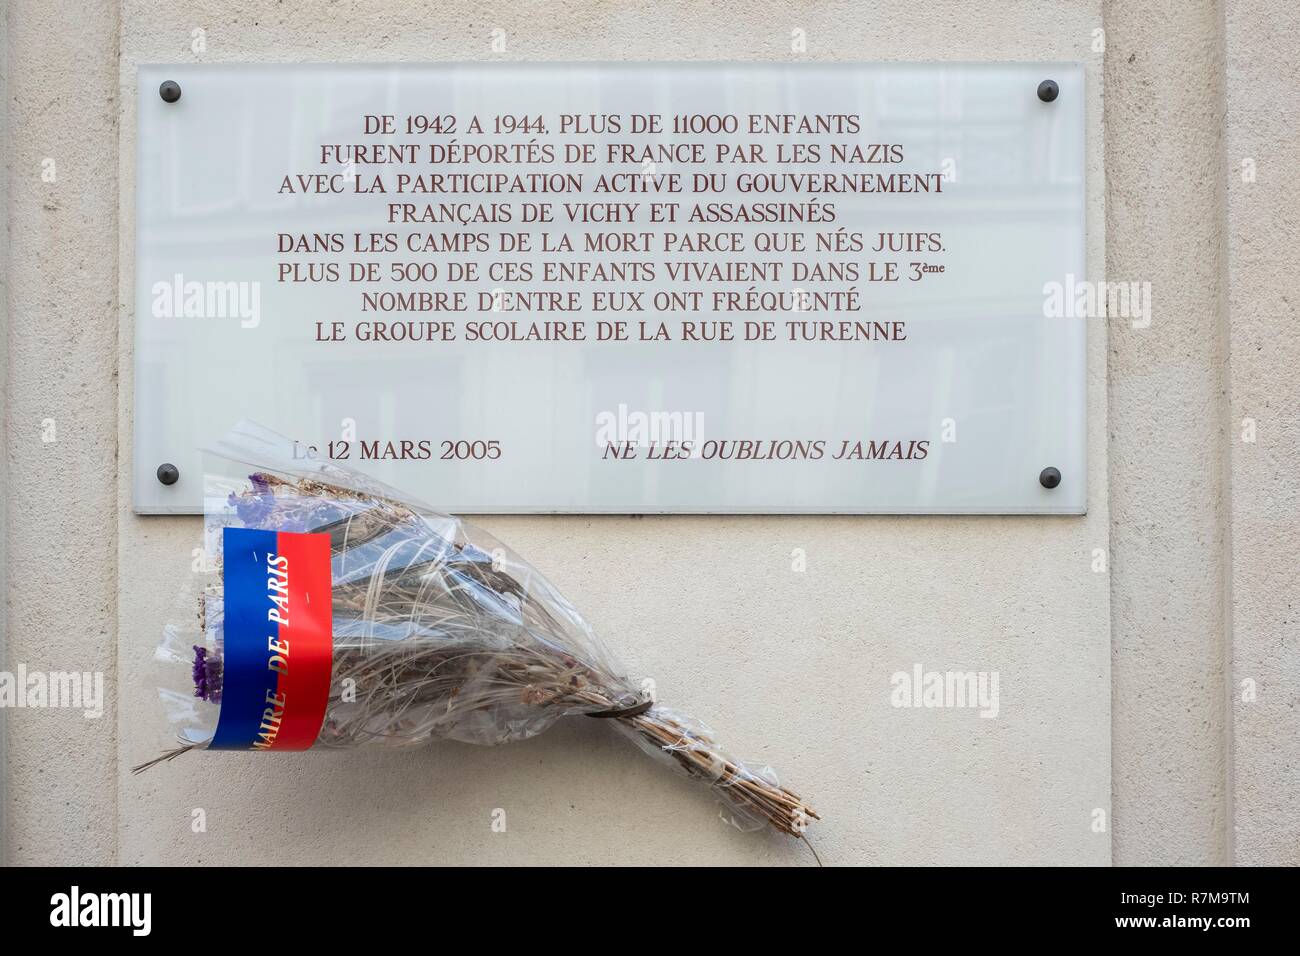 Abertura Da Xadrez Defesa Francesa Foto de Stock - Imagem de placa,  francês: 109101666